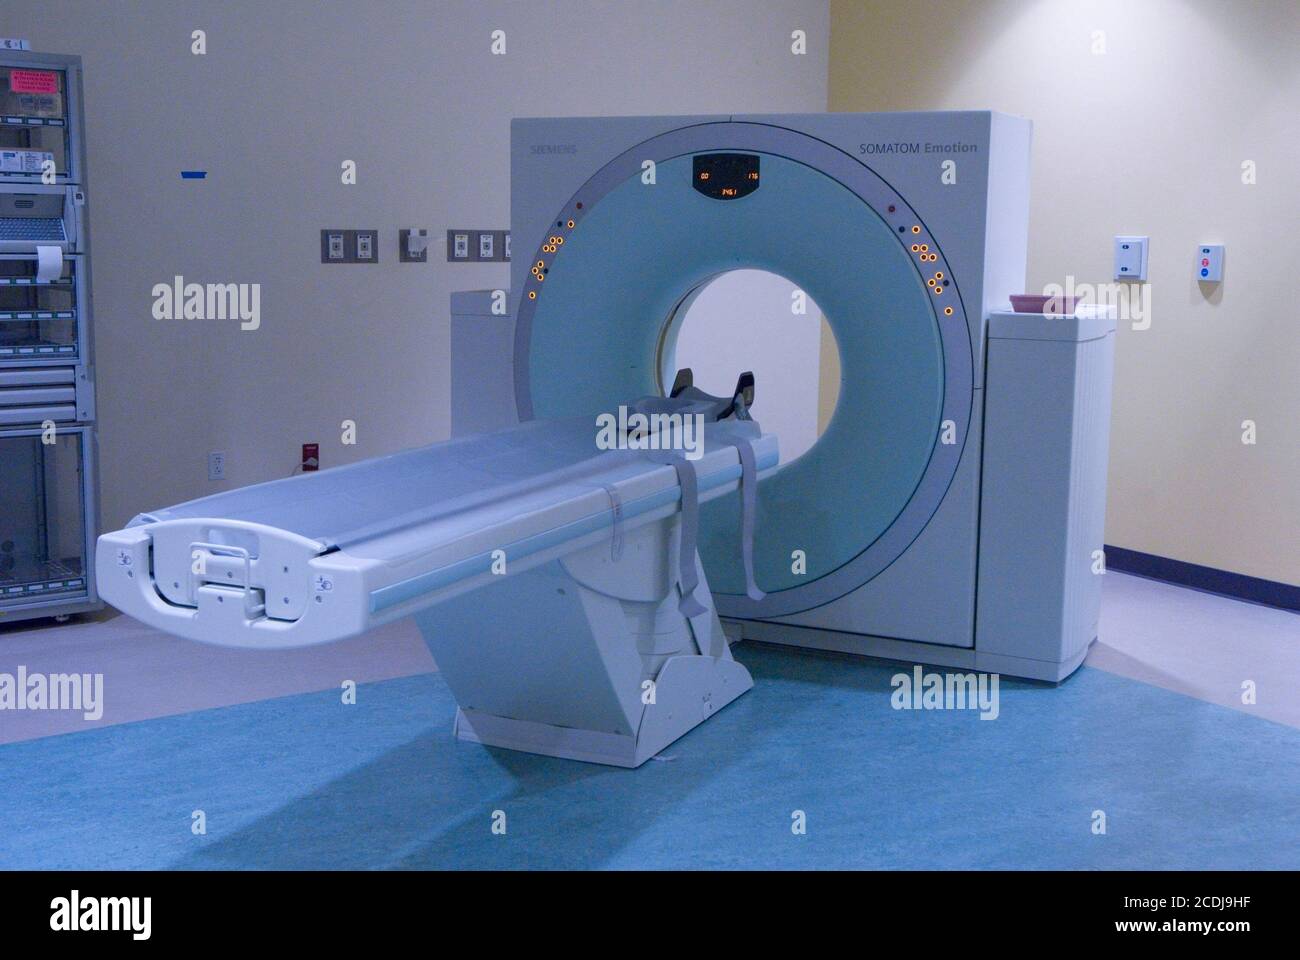 Austin, TX 26 juin 2007 : appareil d'imagerie par résonance magnétique (IRM) dans la salle d'urgence du centre médical pour enfants Dell, un hôpital de pointe de 500,000 pieds carrés avec 24 lits de soins intensifs et 170 chambres de patients. ©Bob Daemmrich Banque D'Images